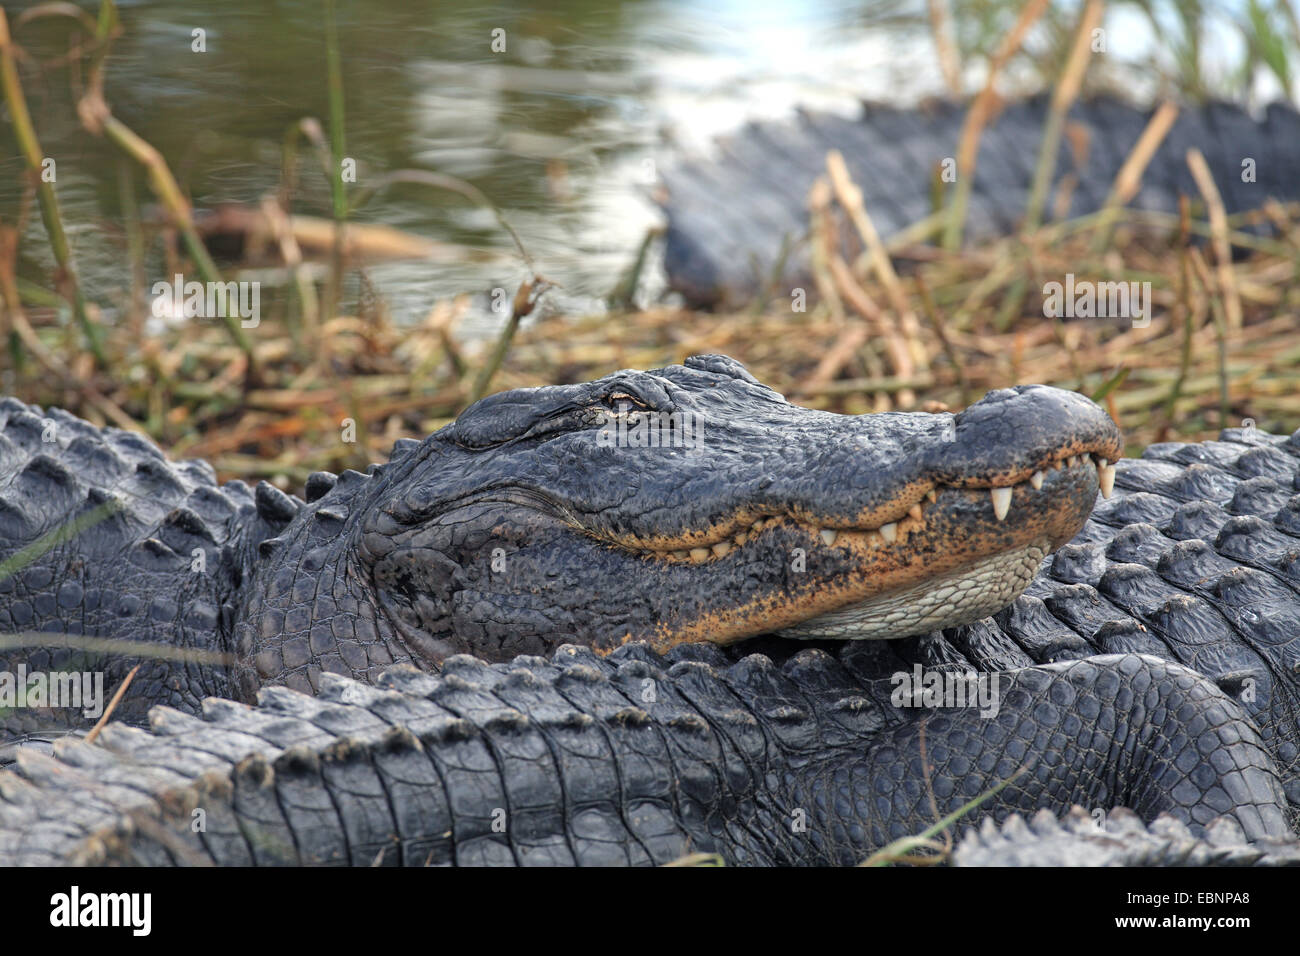 Alligator Alligator mississippiensis) (alligator, situé au bord d'un lac peu profond ; portrait, USA, Floride, le Parc National des Everglades Banque D'Images